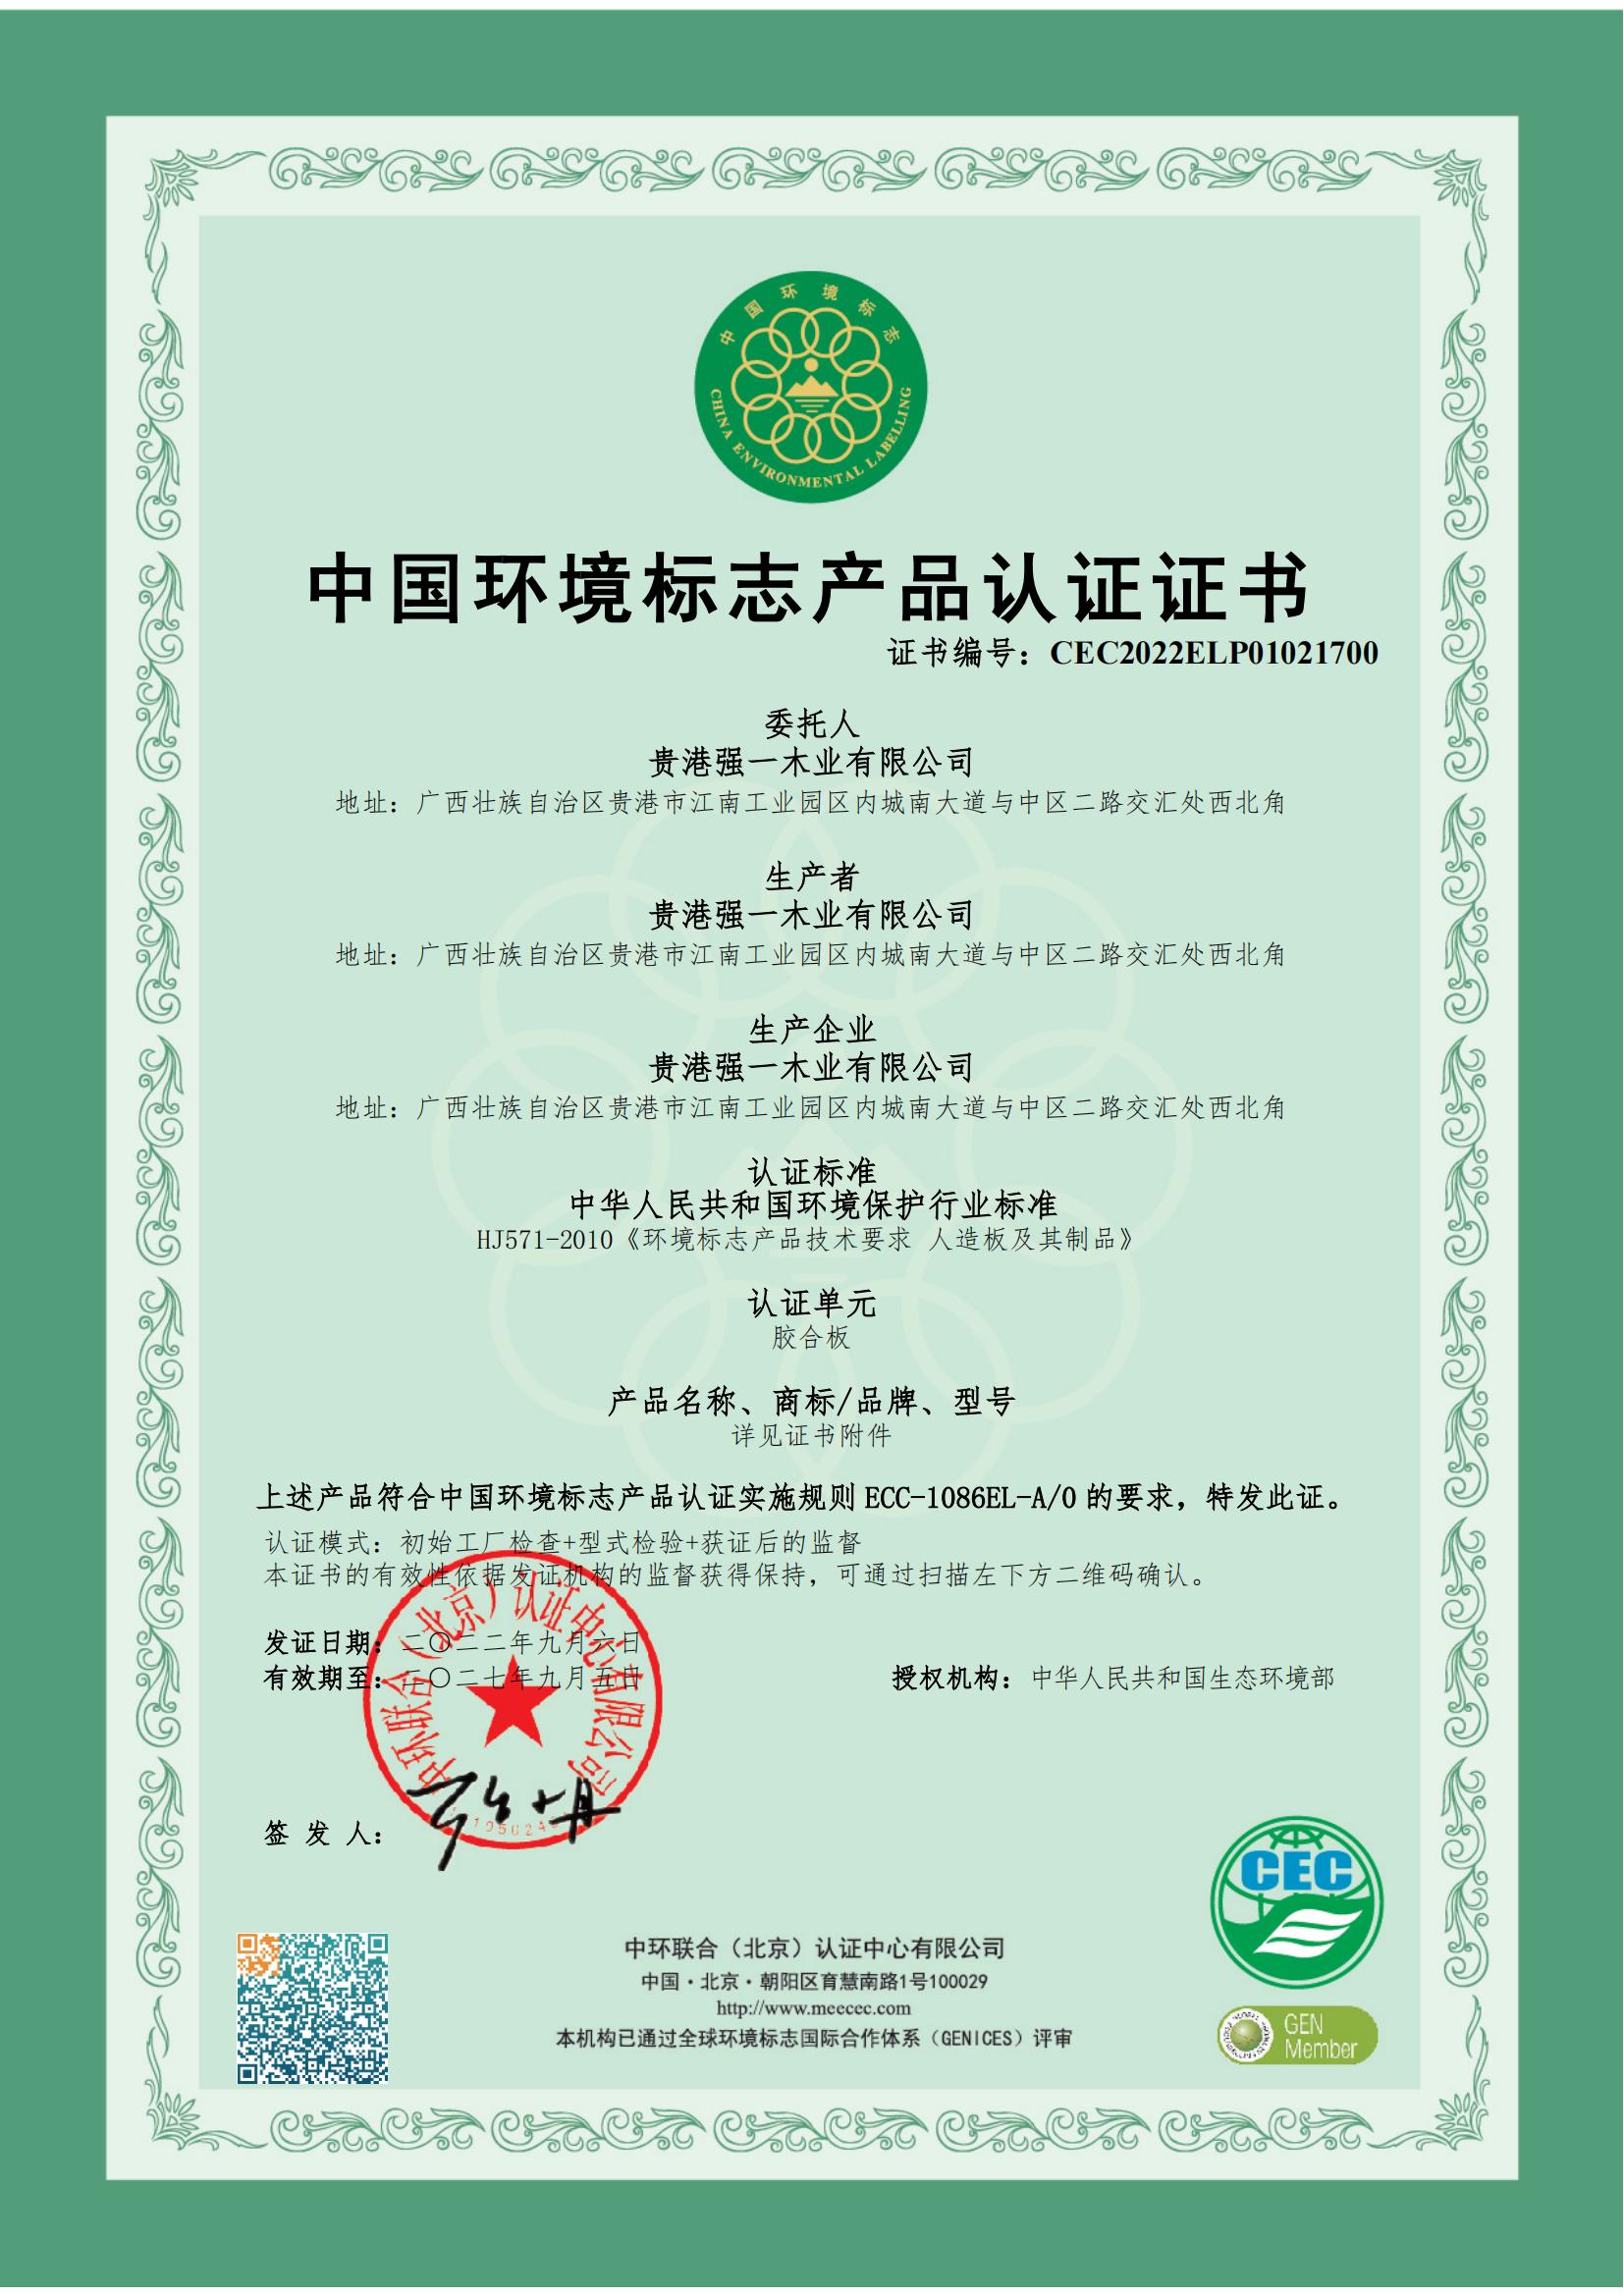 十环认证——中国环境标志产品认证